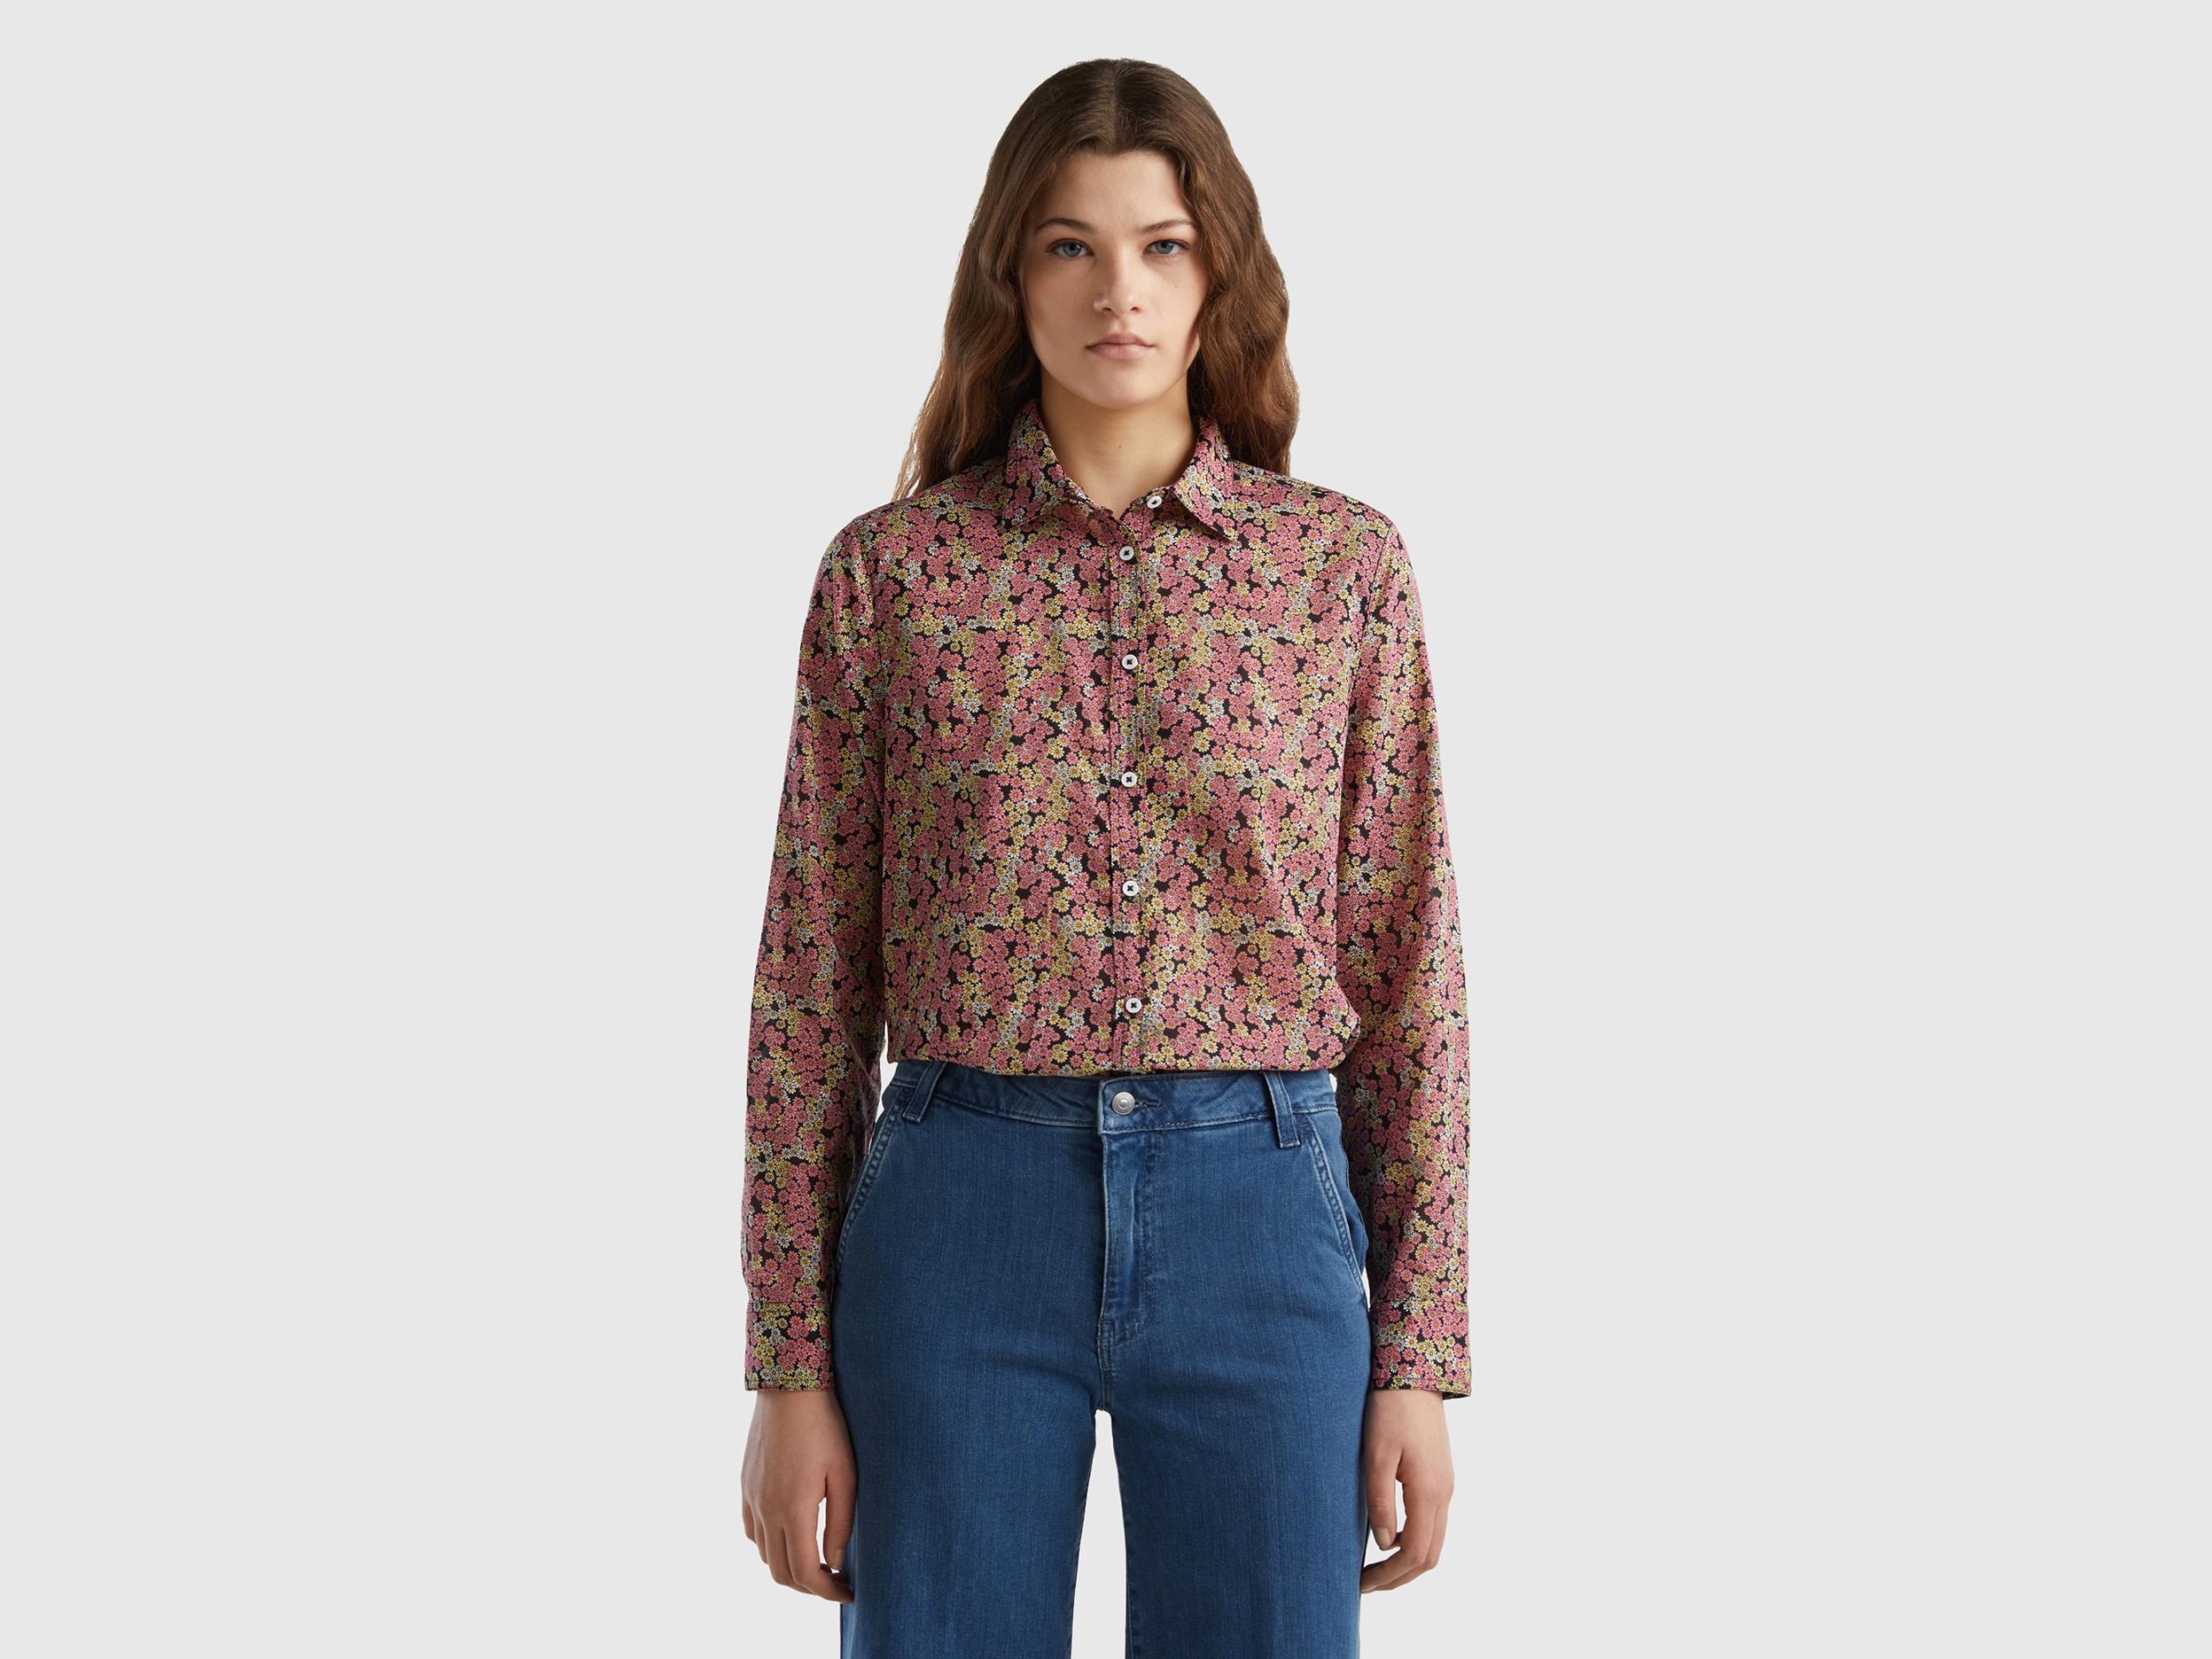 Benetton, 100% Cotton Patterned Shirt, size S, Multi-color, Women